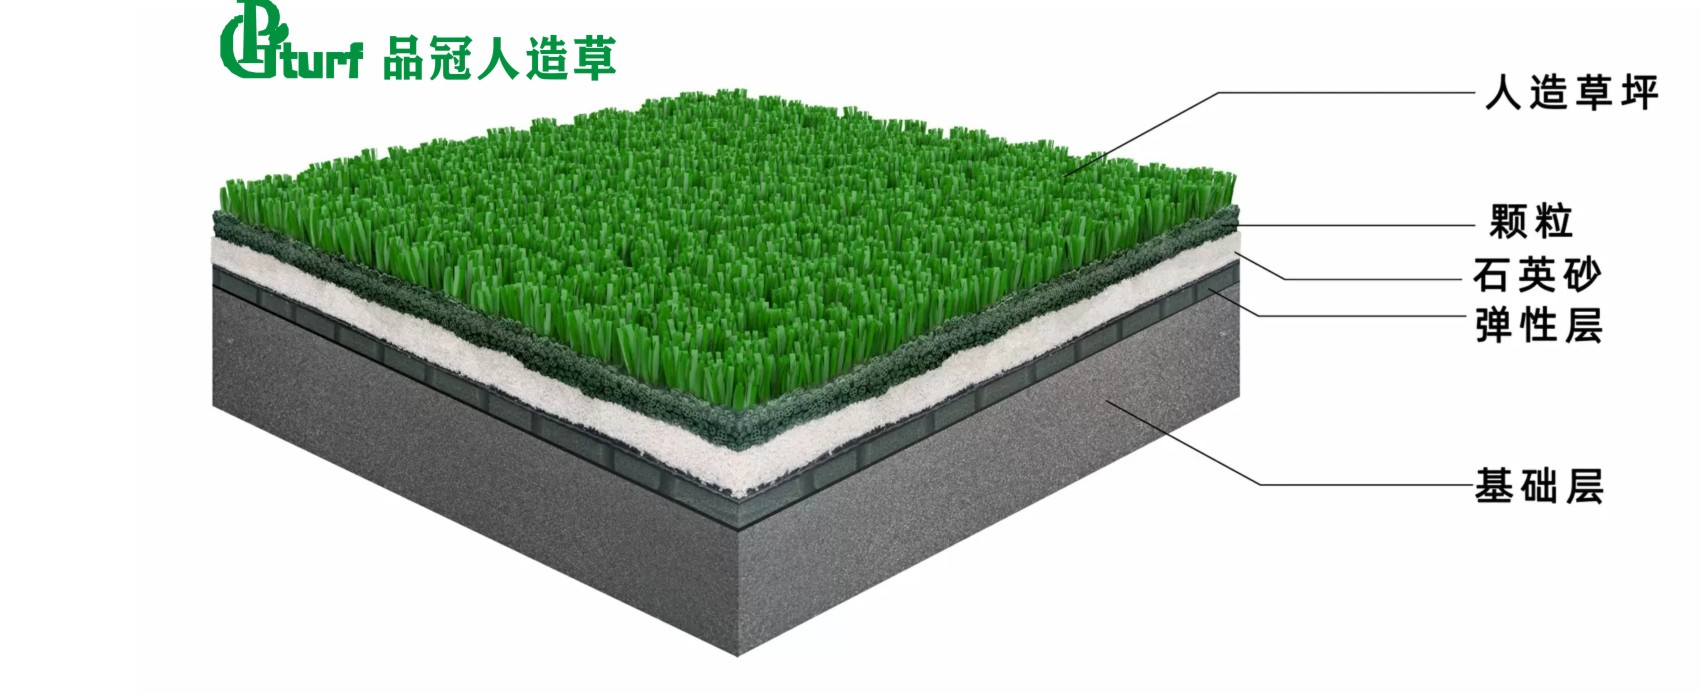 人造草坪填充结构-1.jpg